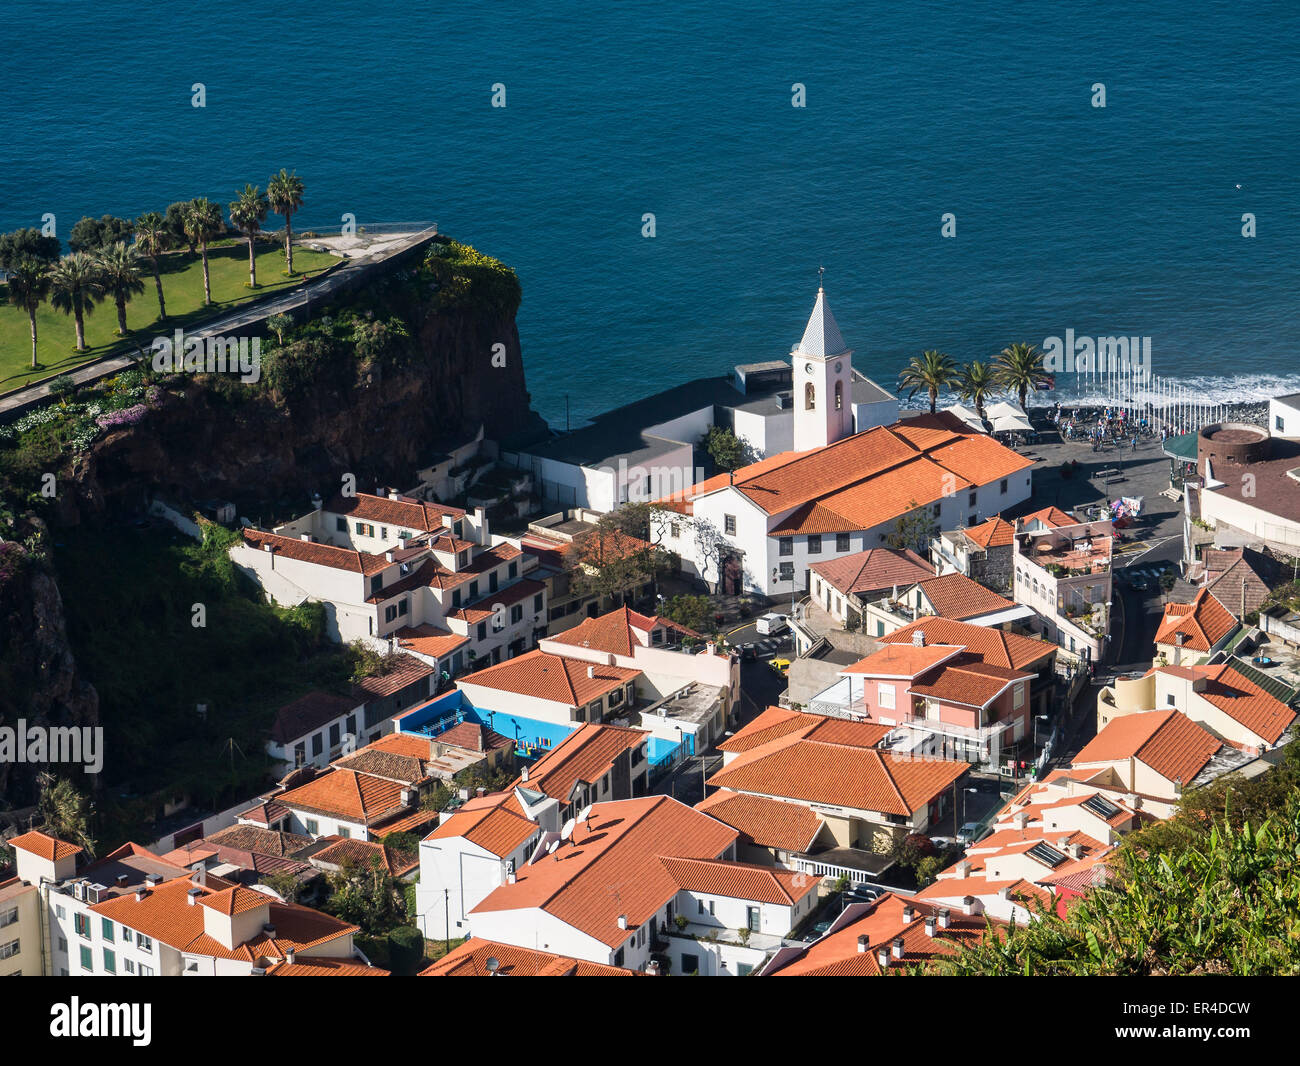 Camara de Lobos, Madeira, Portugal Stock Photo